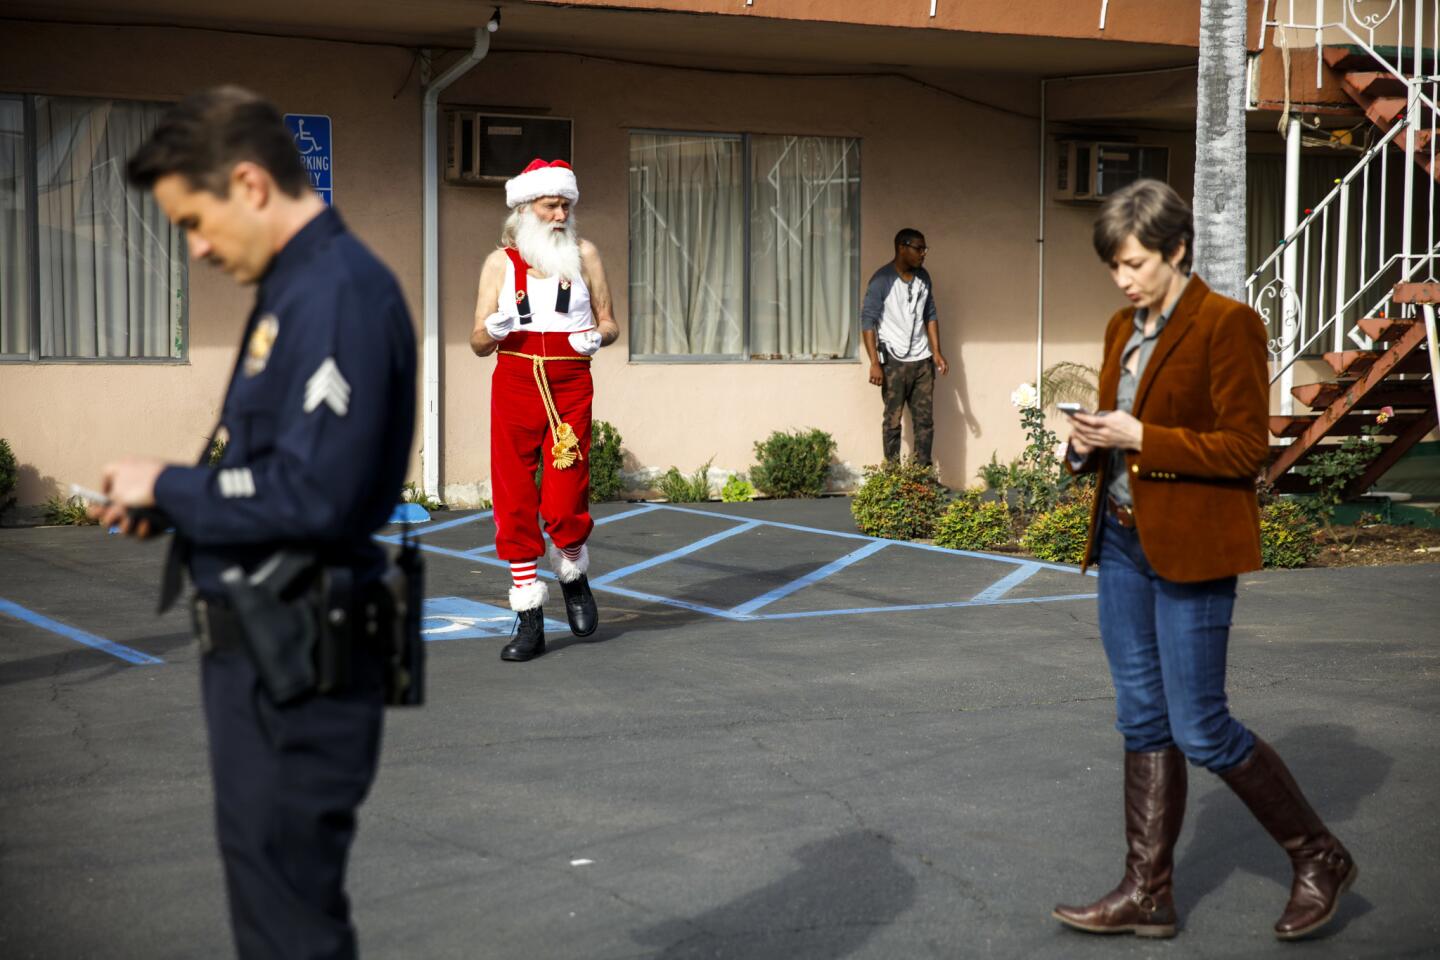 Santa takes a break on FX's "Fargo" set